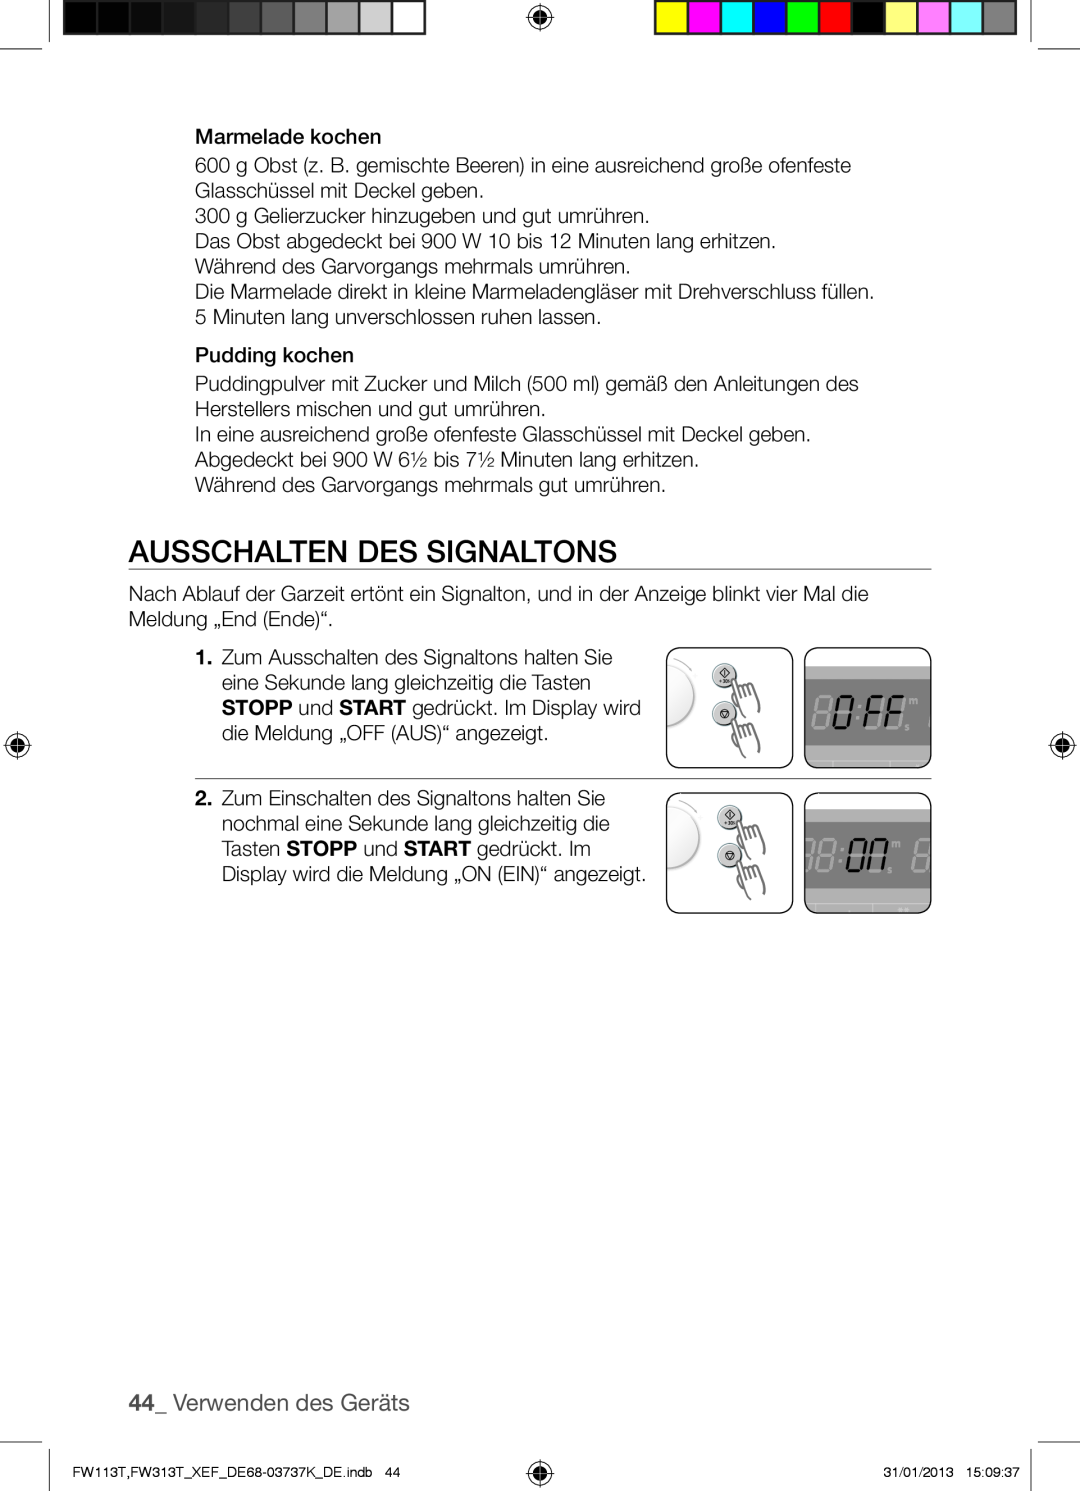 Samsung FW113T002/XEF manual Ausschalten Des Signaltons, Verwenden des Geräts 